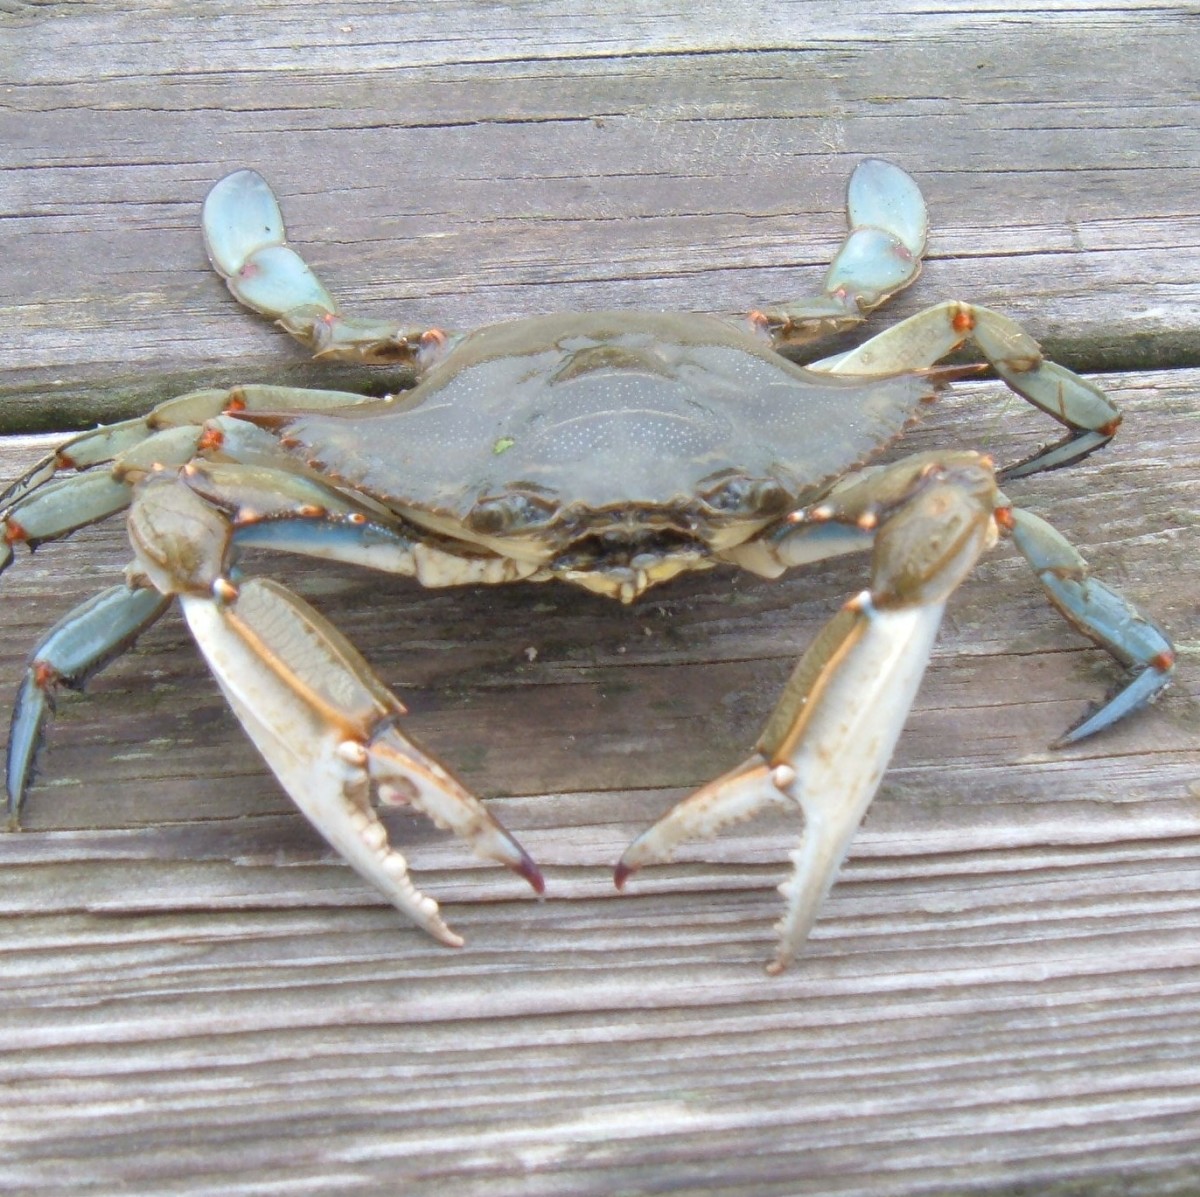 Male blue claw crab.